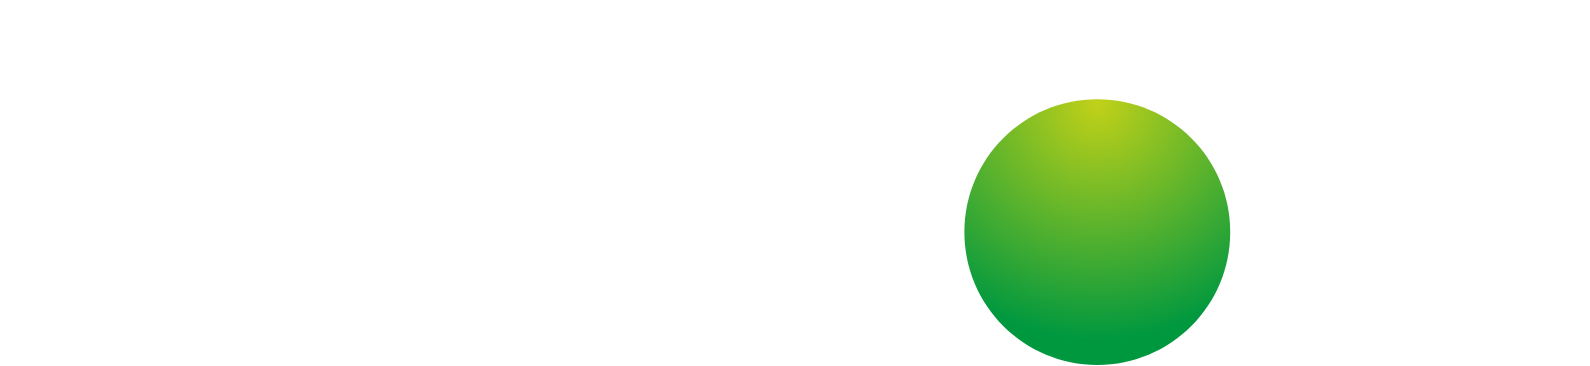 Kainos Logo